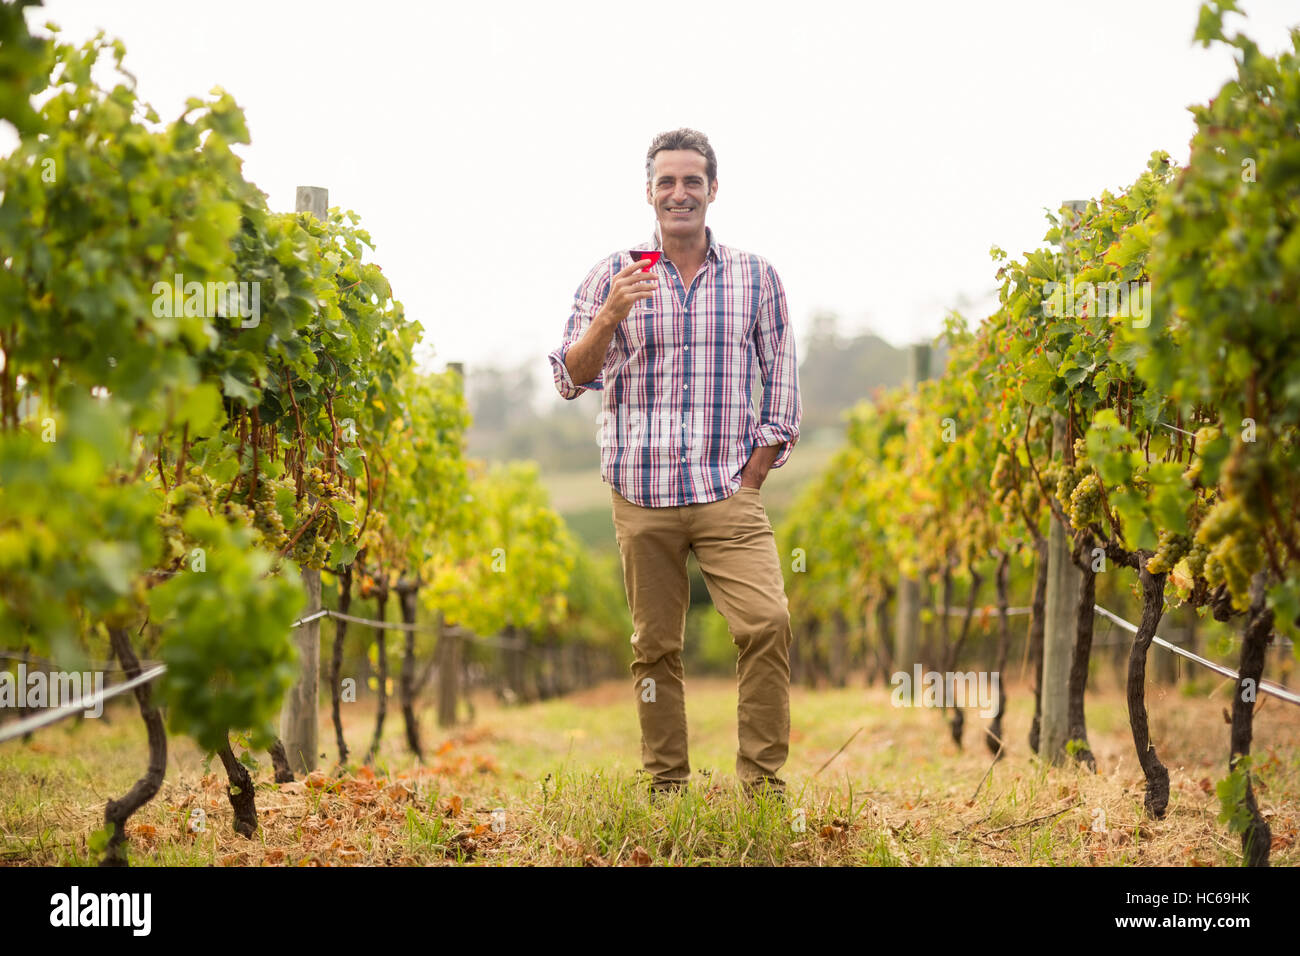 Porträt von lächelnden männlichen Winzer mit einem Glas Wein Stockfoto